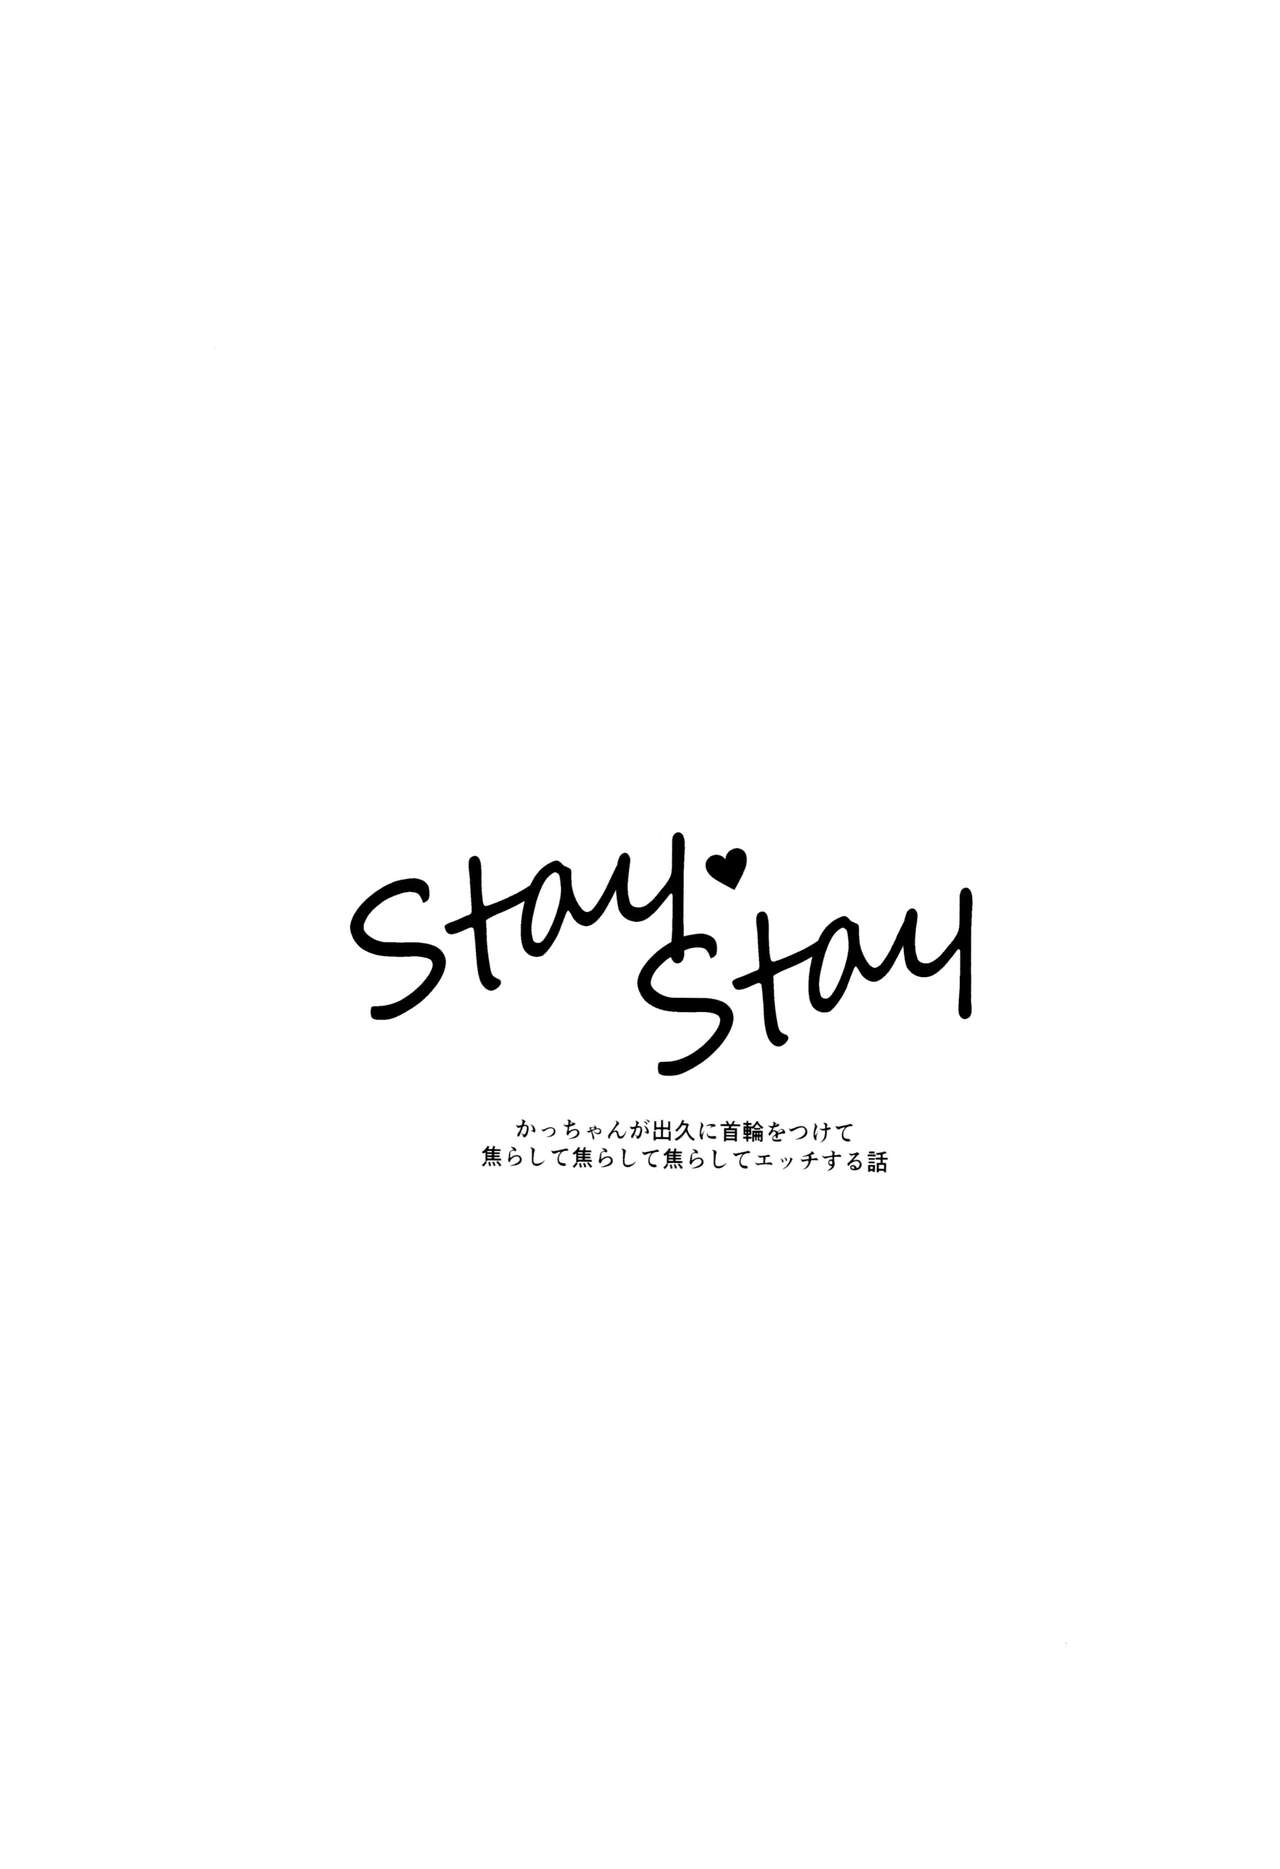 StayStay